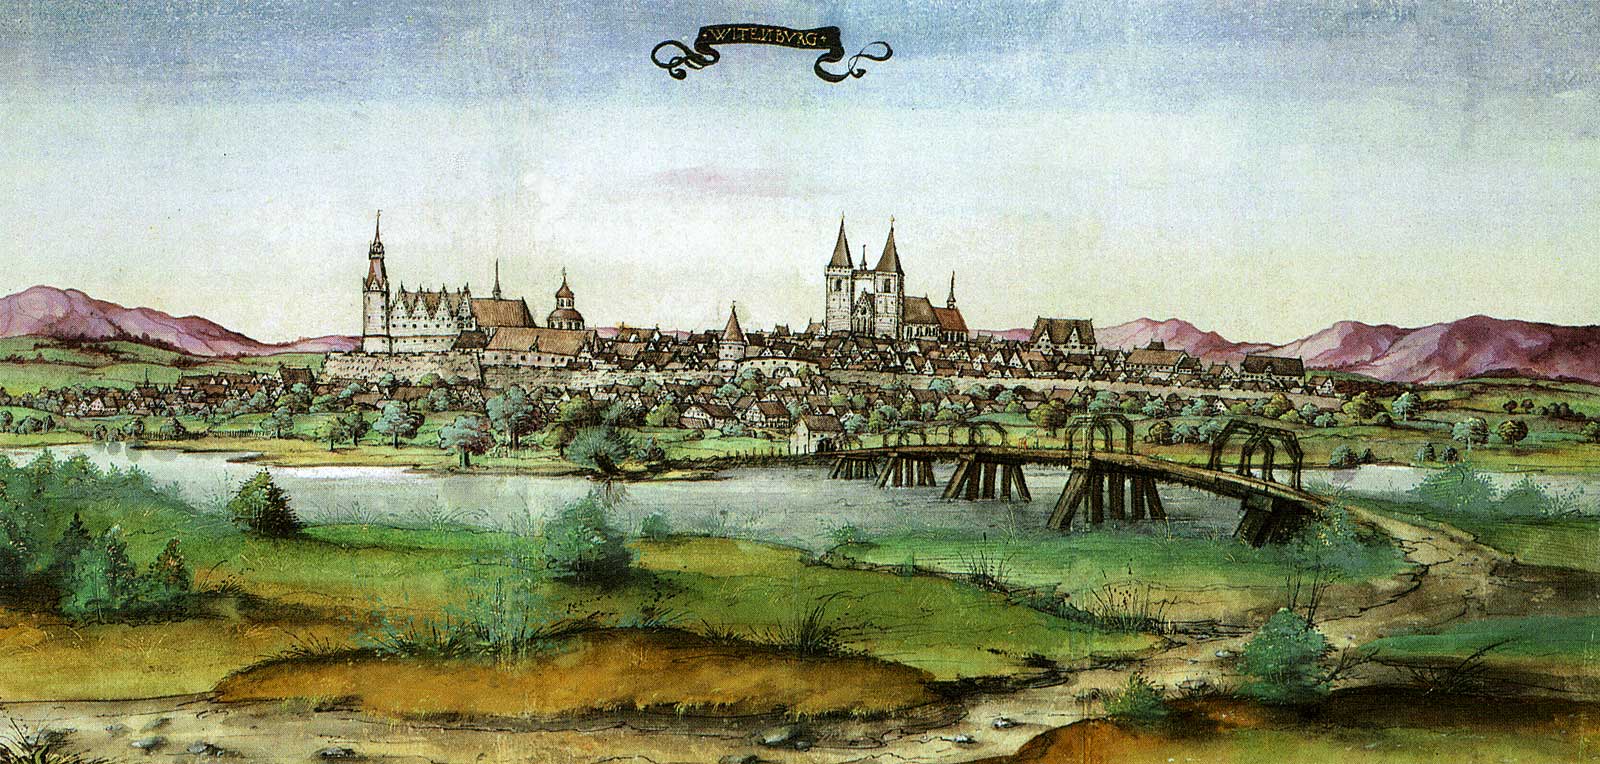 Wittenberg in 1536